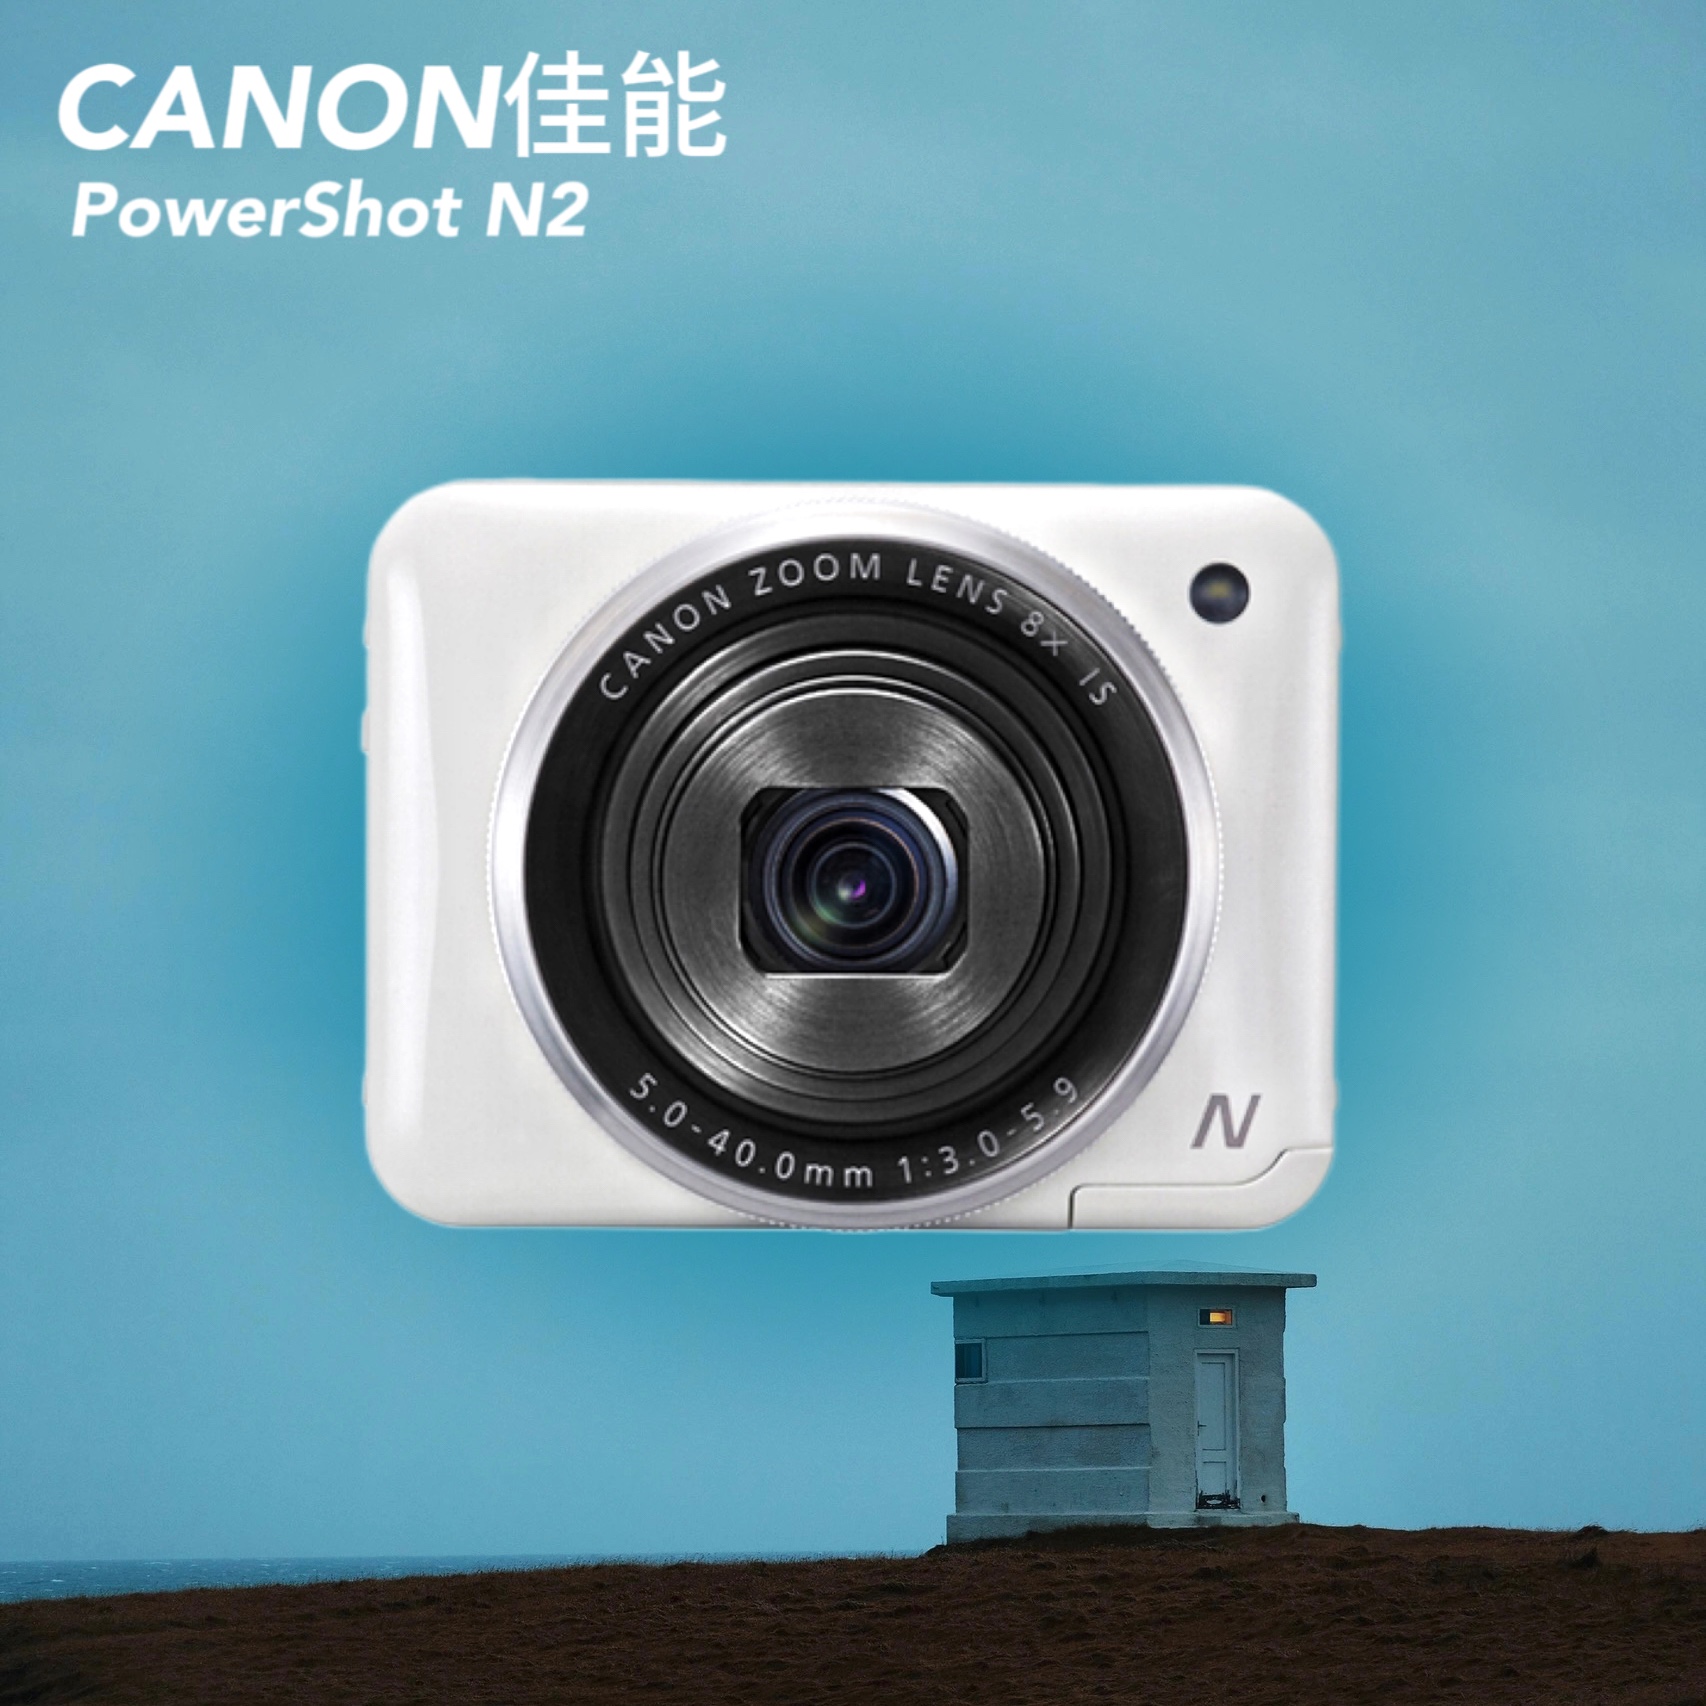 正品Canon佳能PowerSho N2卡片CCD数码相机方块翻转屏人像风景